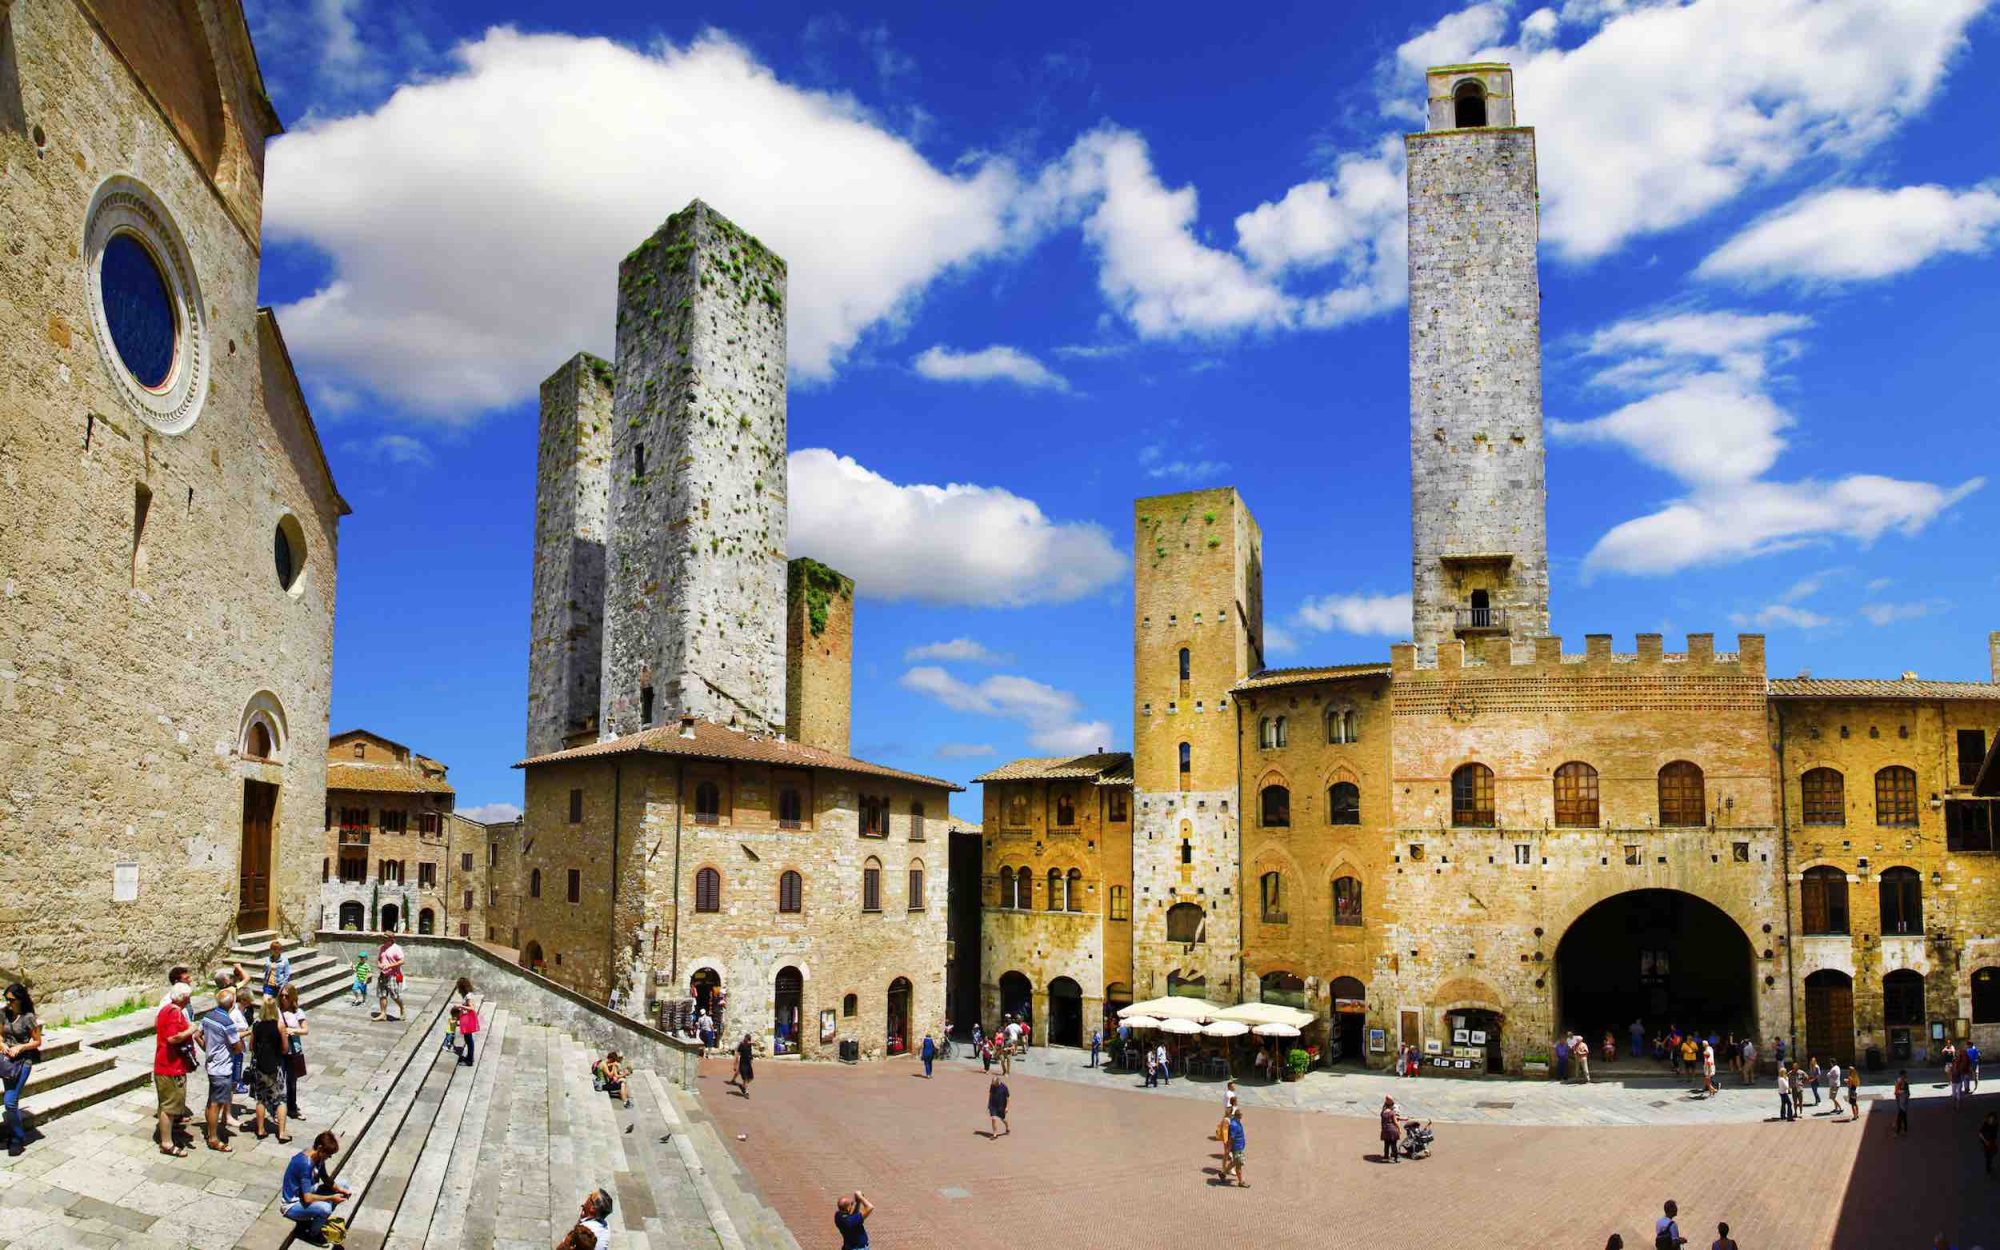 Una ricerca condotta alla fine del 2018 ci dice che Siena è la quarta città più vivibile d'Italia. Ma, in generale, come si vive in Toscana?